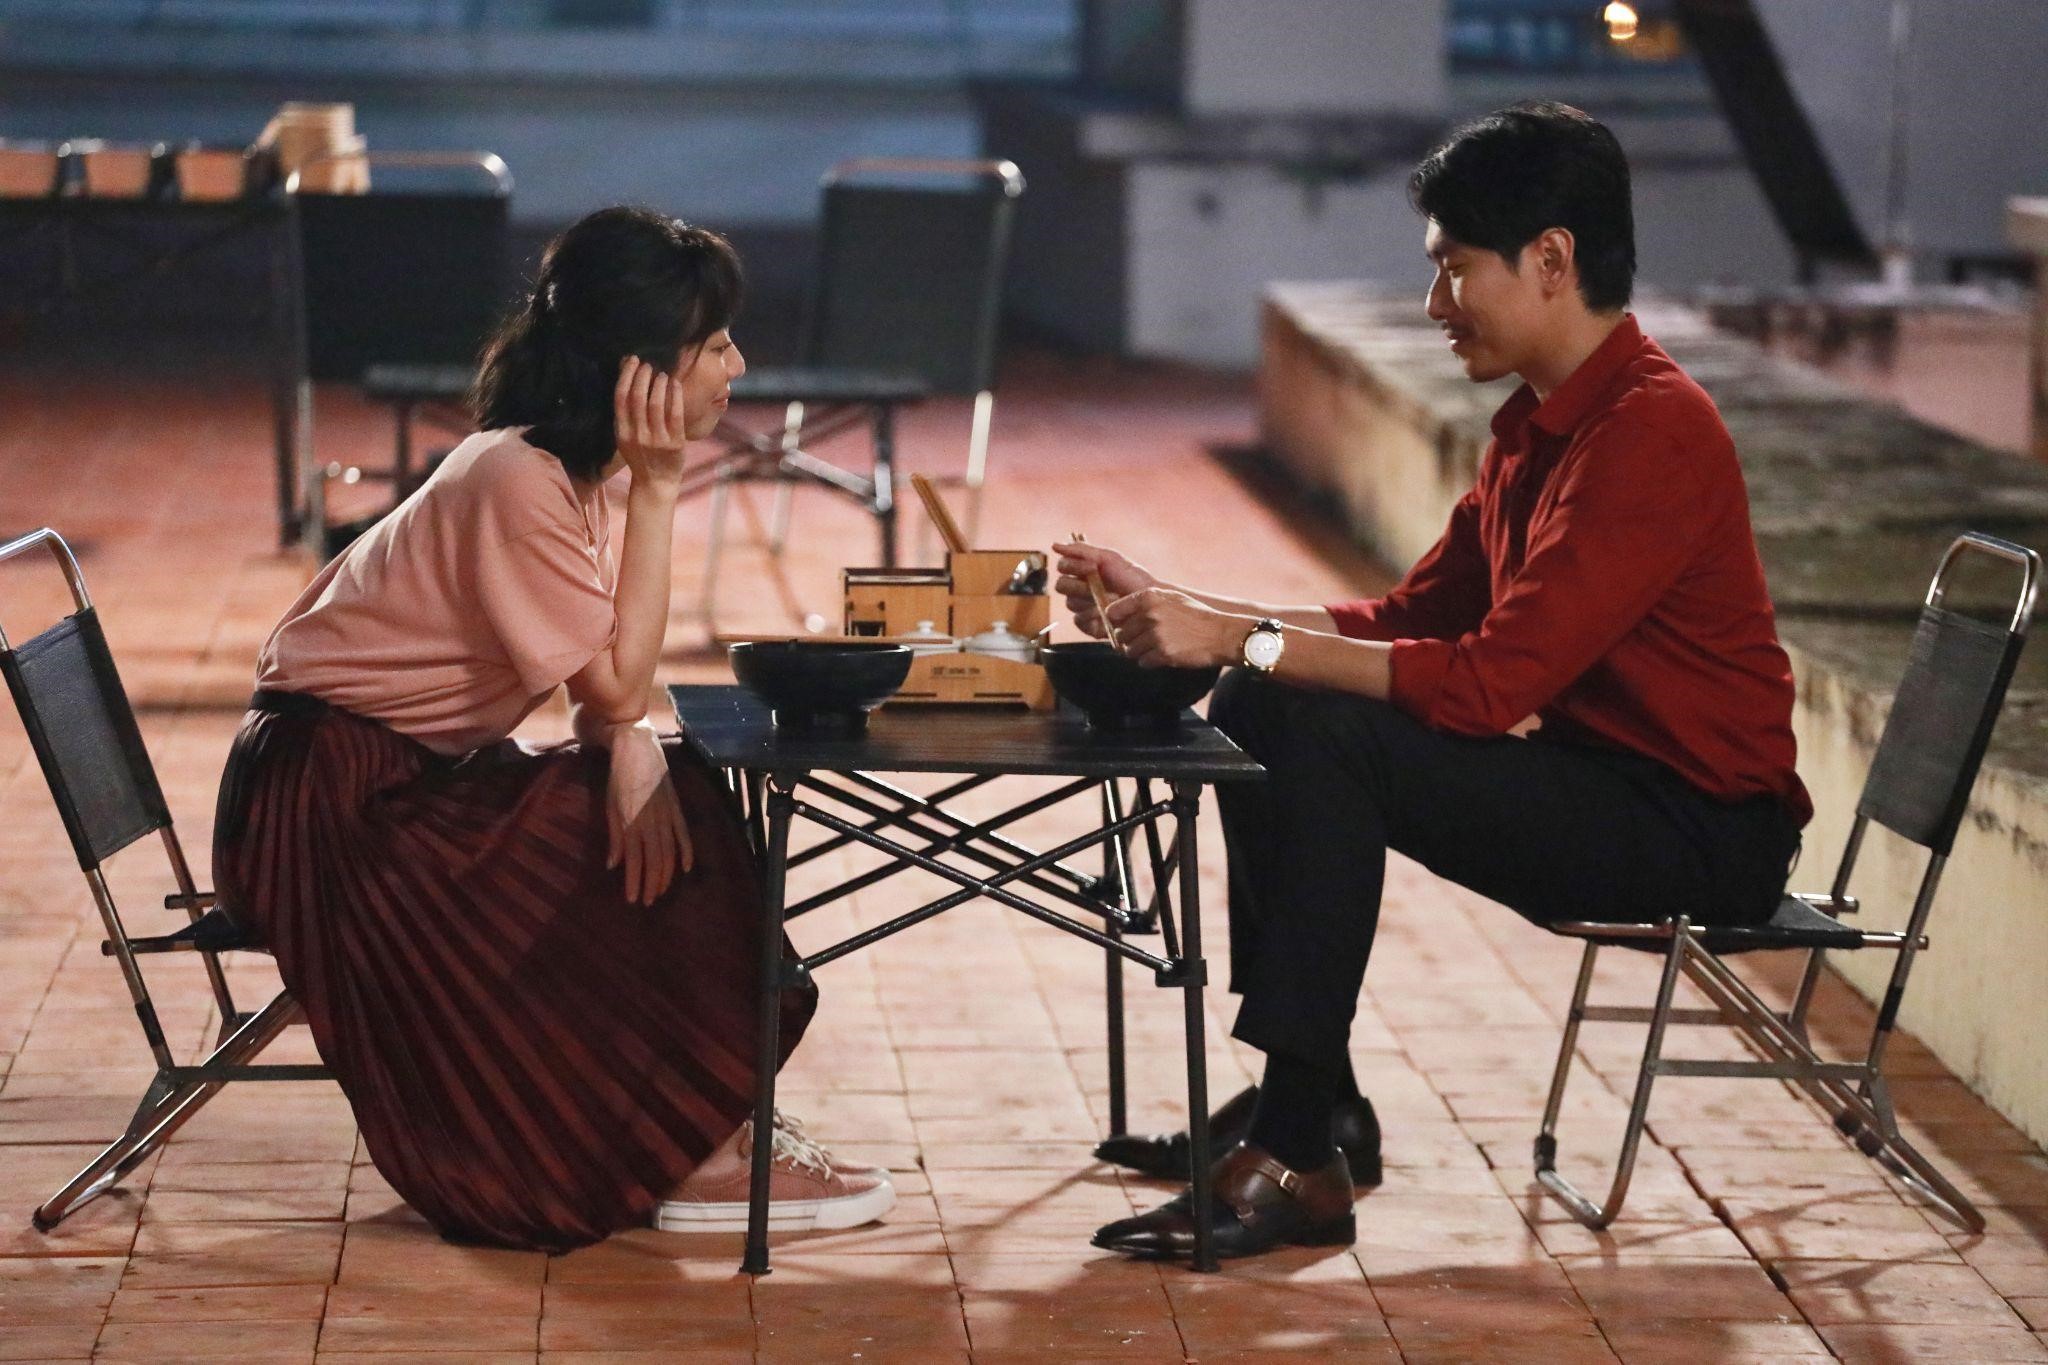 “Chìa Khóa Trăm Tỷ” tung “nụ hôn điện ảnh đầu tiên' của Thu Trang trong trailer Tết - ảnh 3